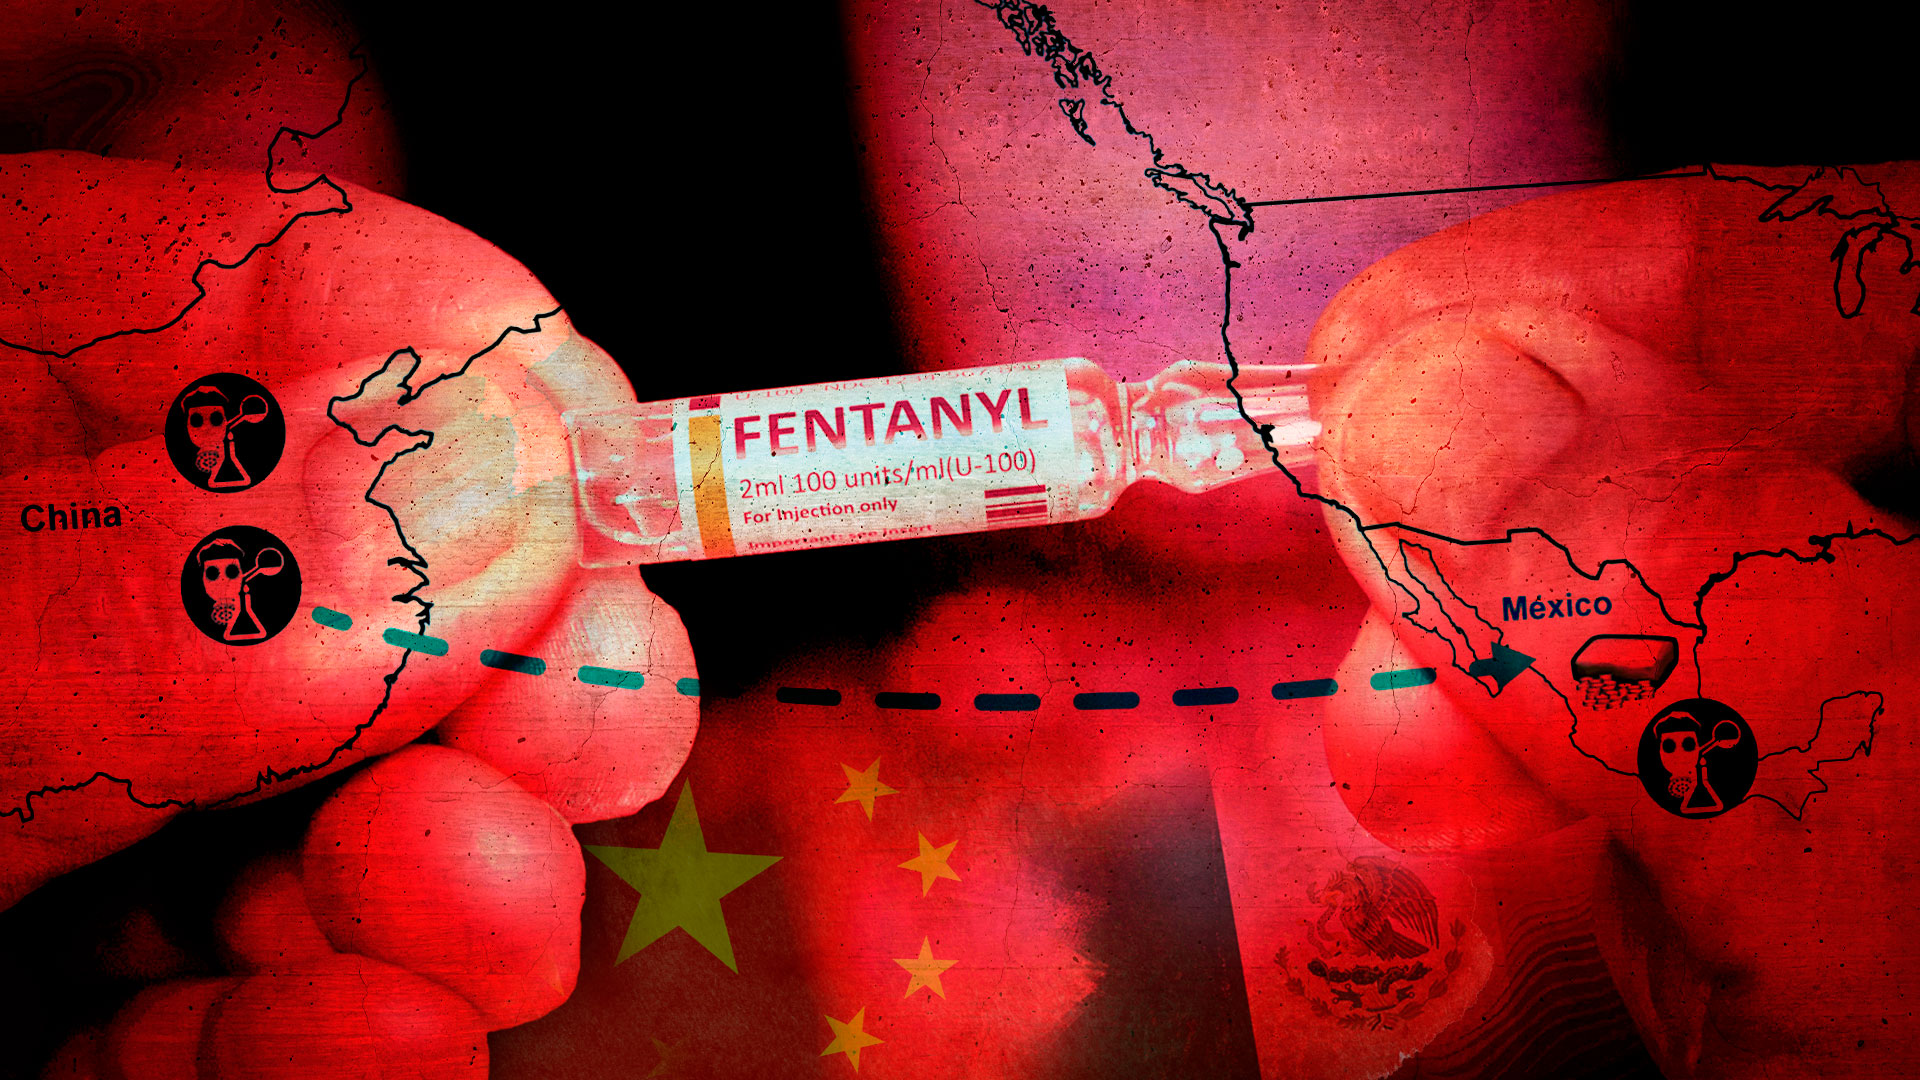 La venta de fentanilo y precursores químicos de China a México crece de manera exponencial, como la epidemia que golpea cada vez más fuerte en más países (Infobae)